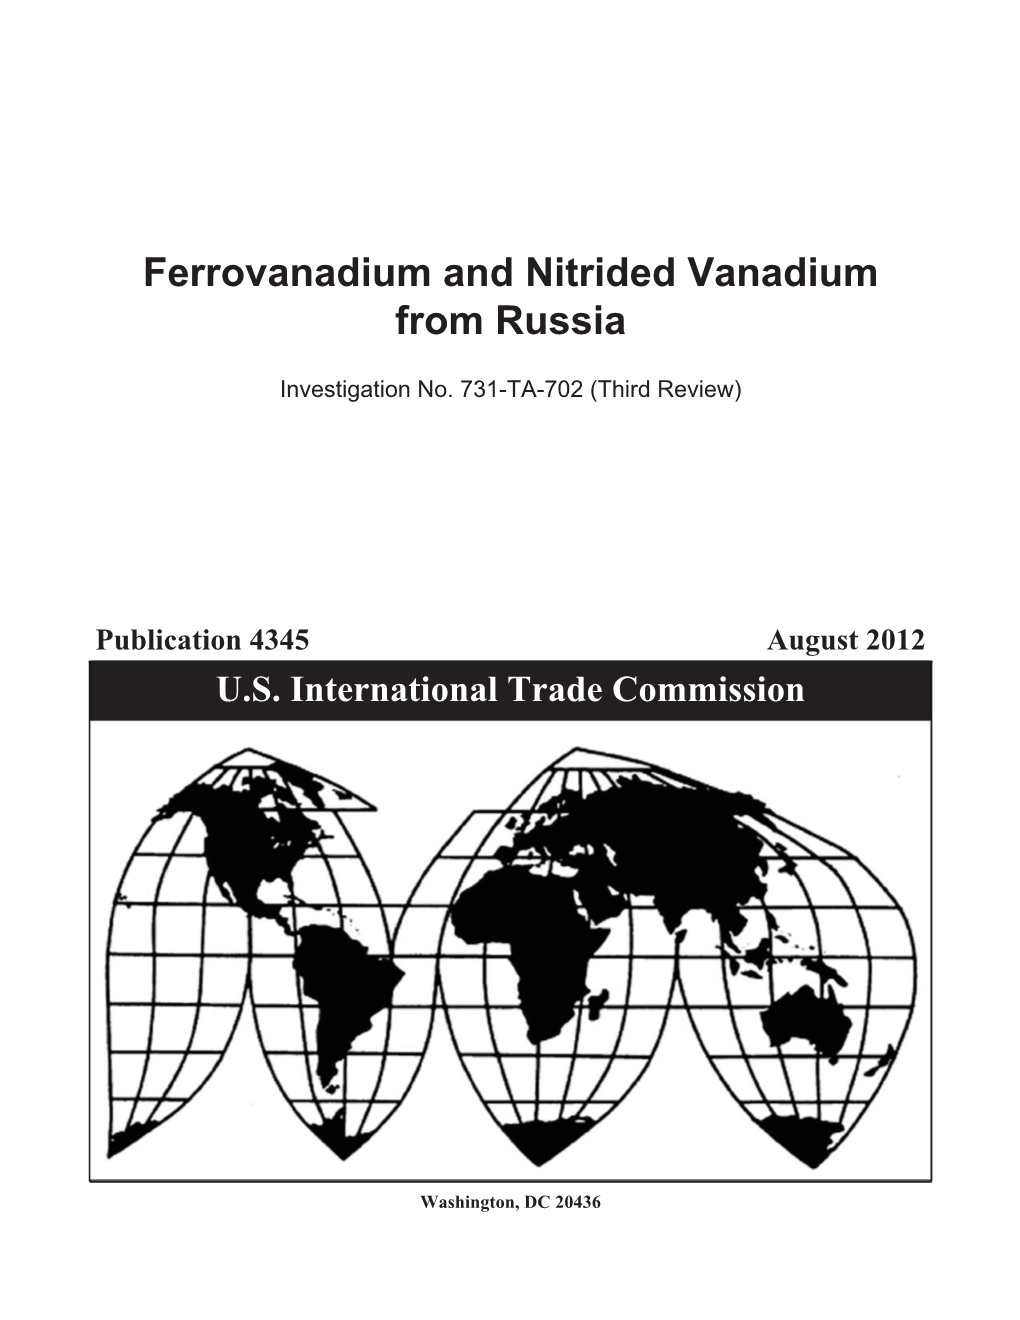 Ferrovanadium and Nitrided Vanadium from Russia